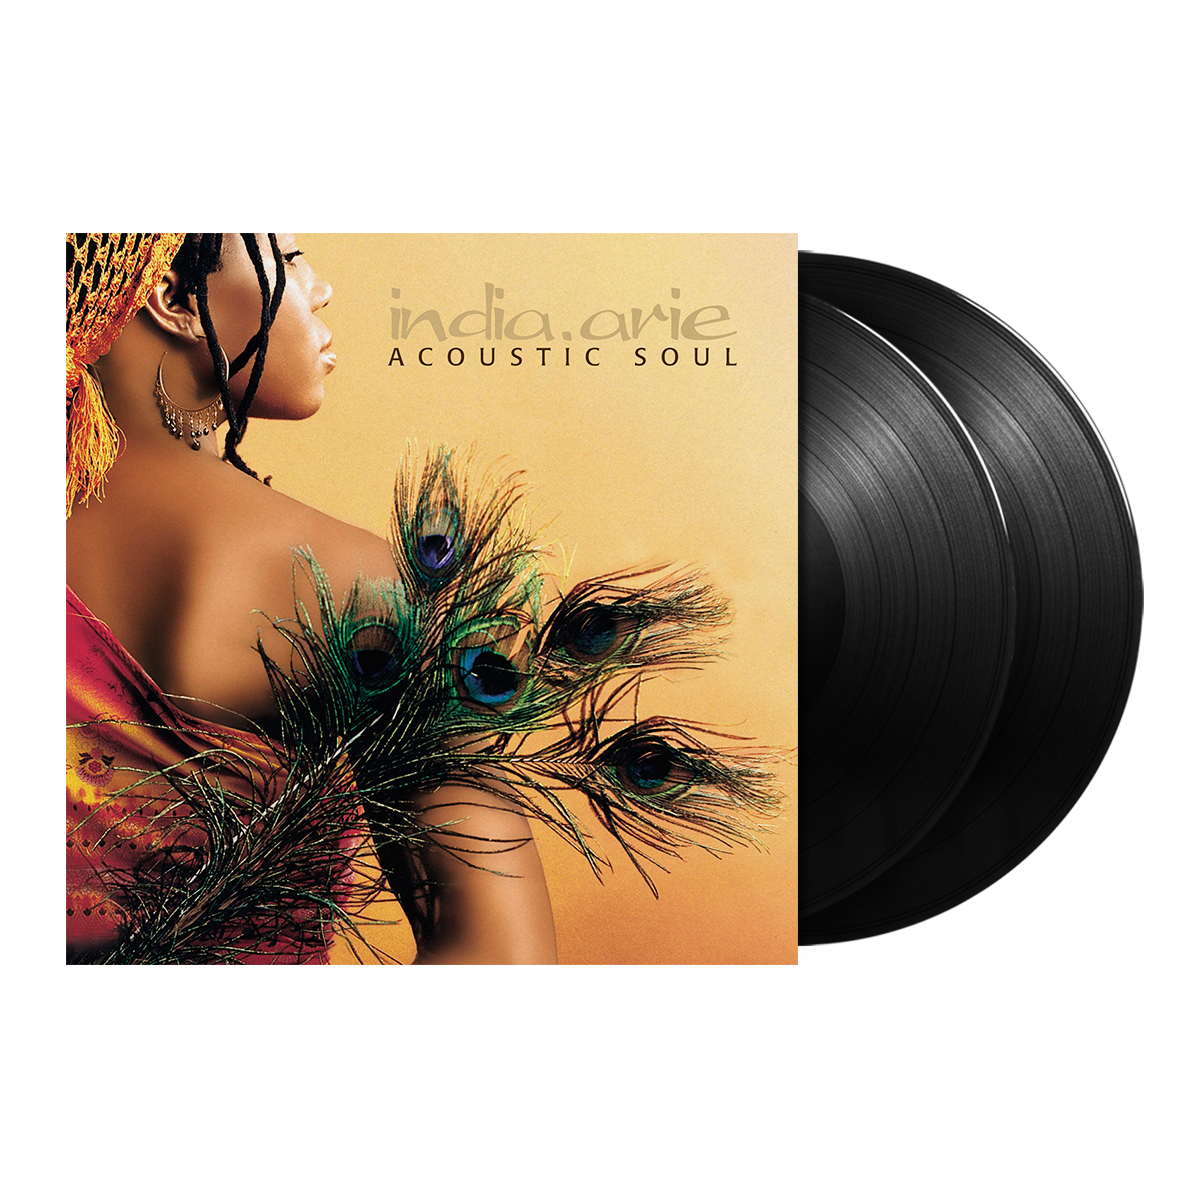 India.Arie, Acoustic Soul 2LP